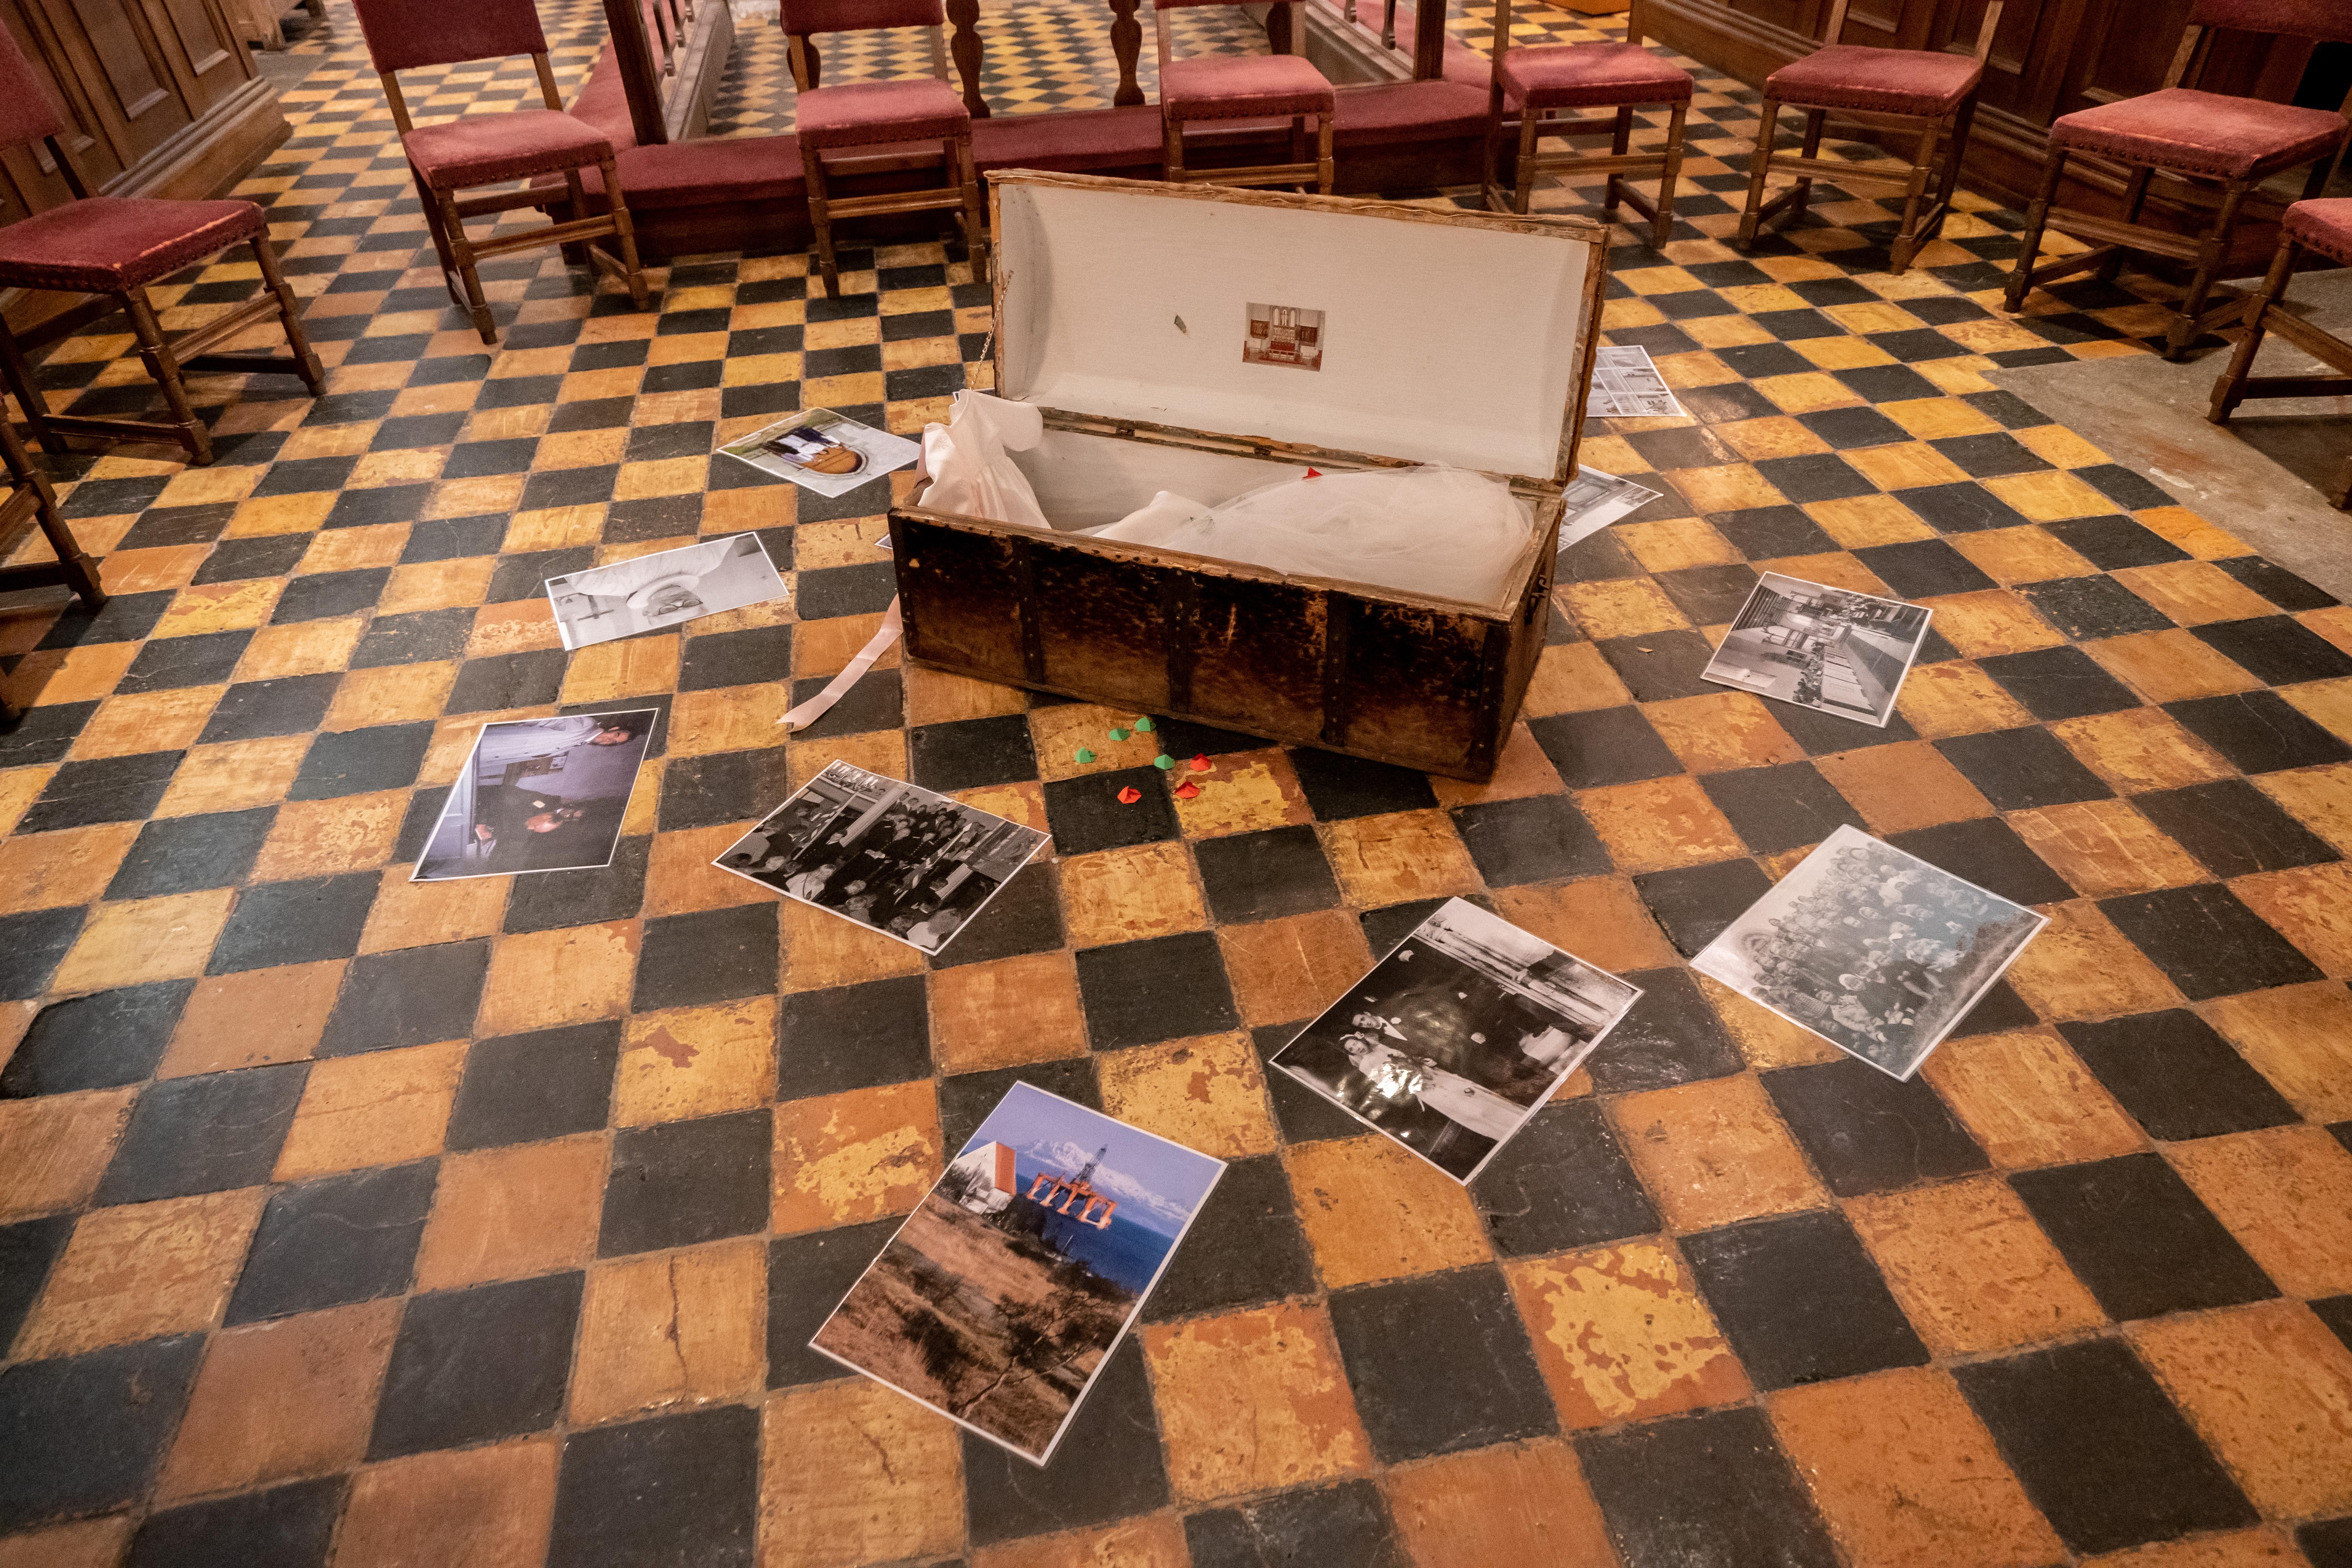 En selskinnskiste med gjenstander knyttet til kirkelige handlinger og tekstbiter til «Radioteateret» var plassert midt i rommet i Trondenes kirke.